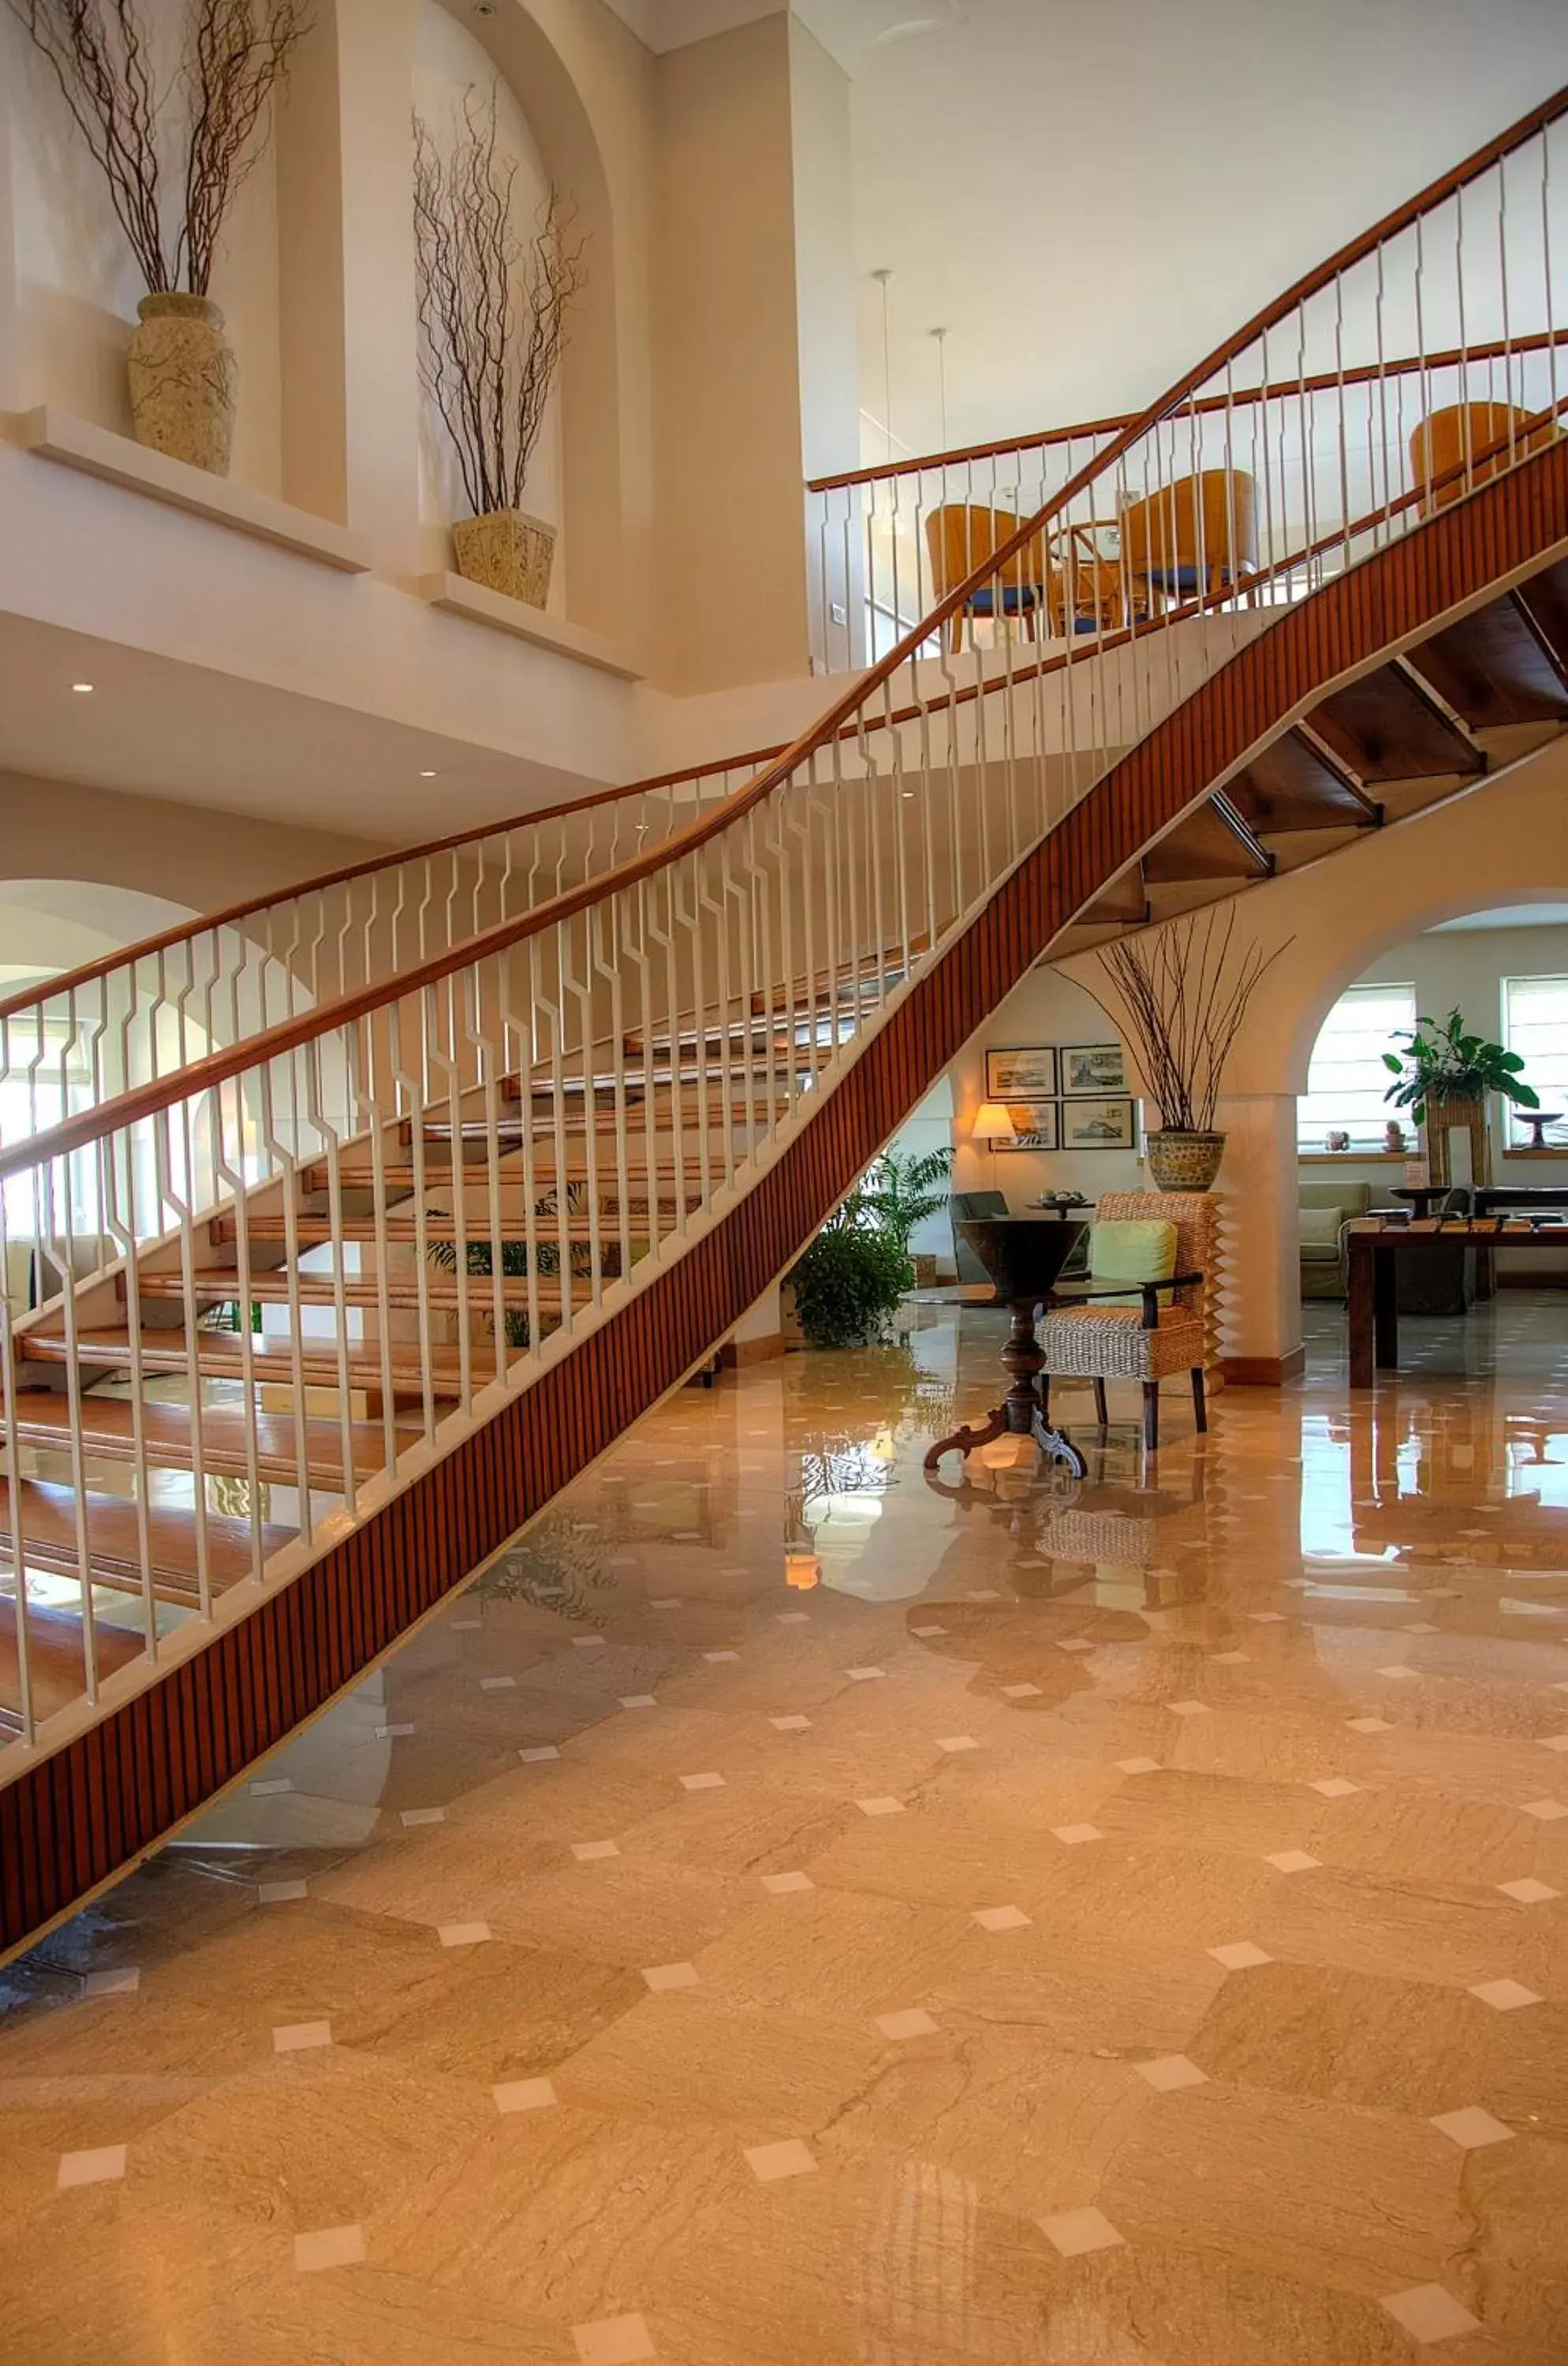 Lobby or reception in Grand Hotel Aminta